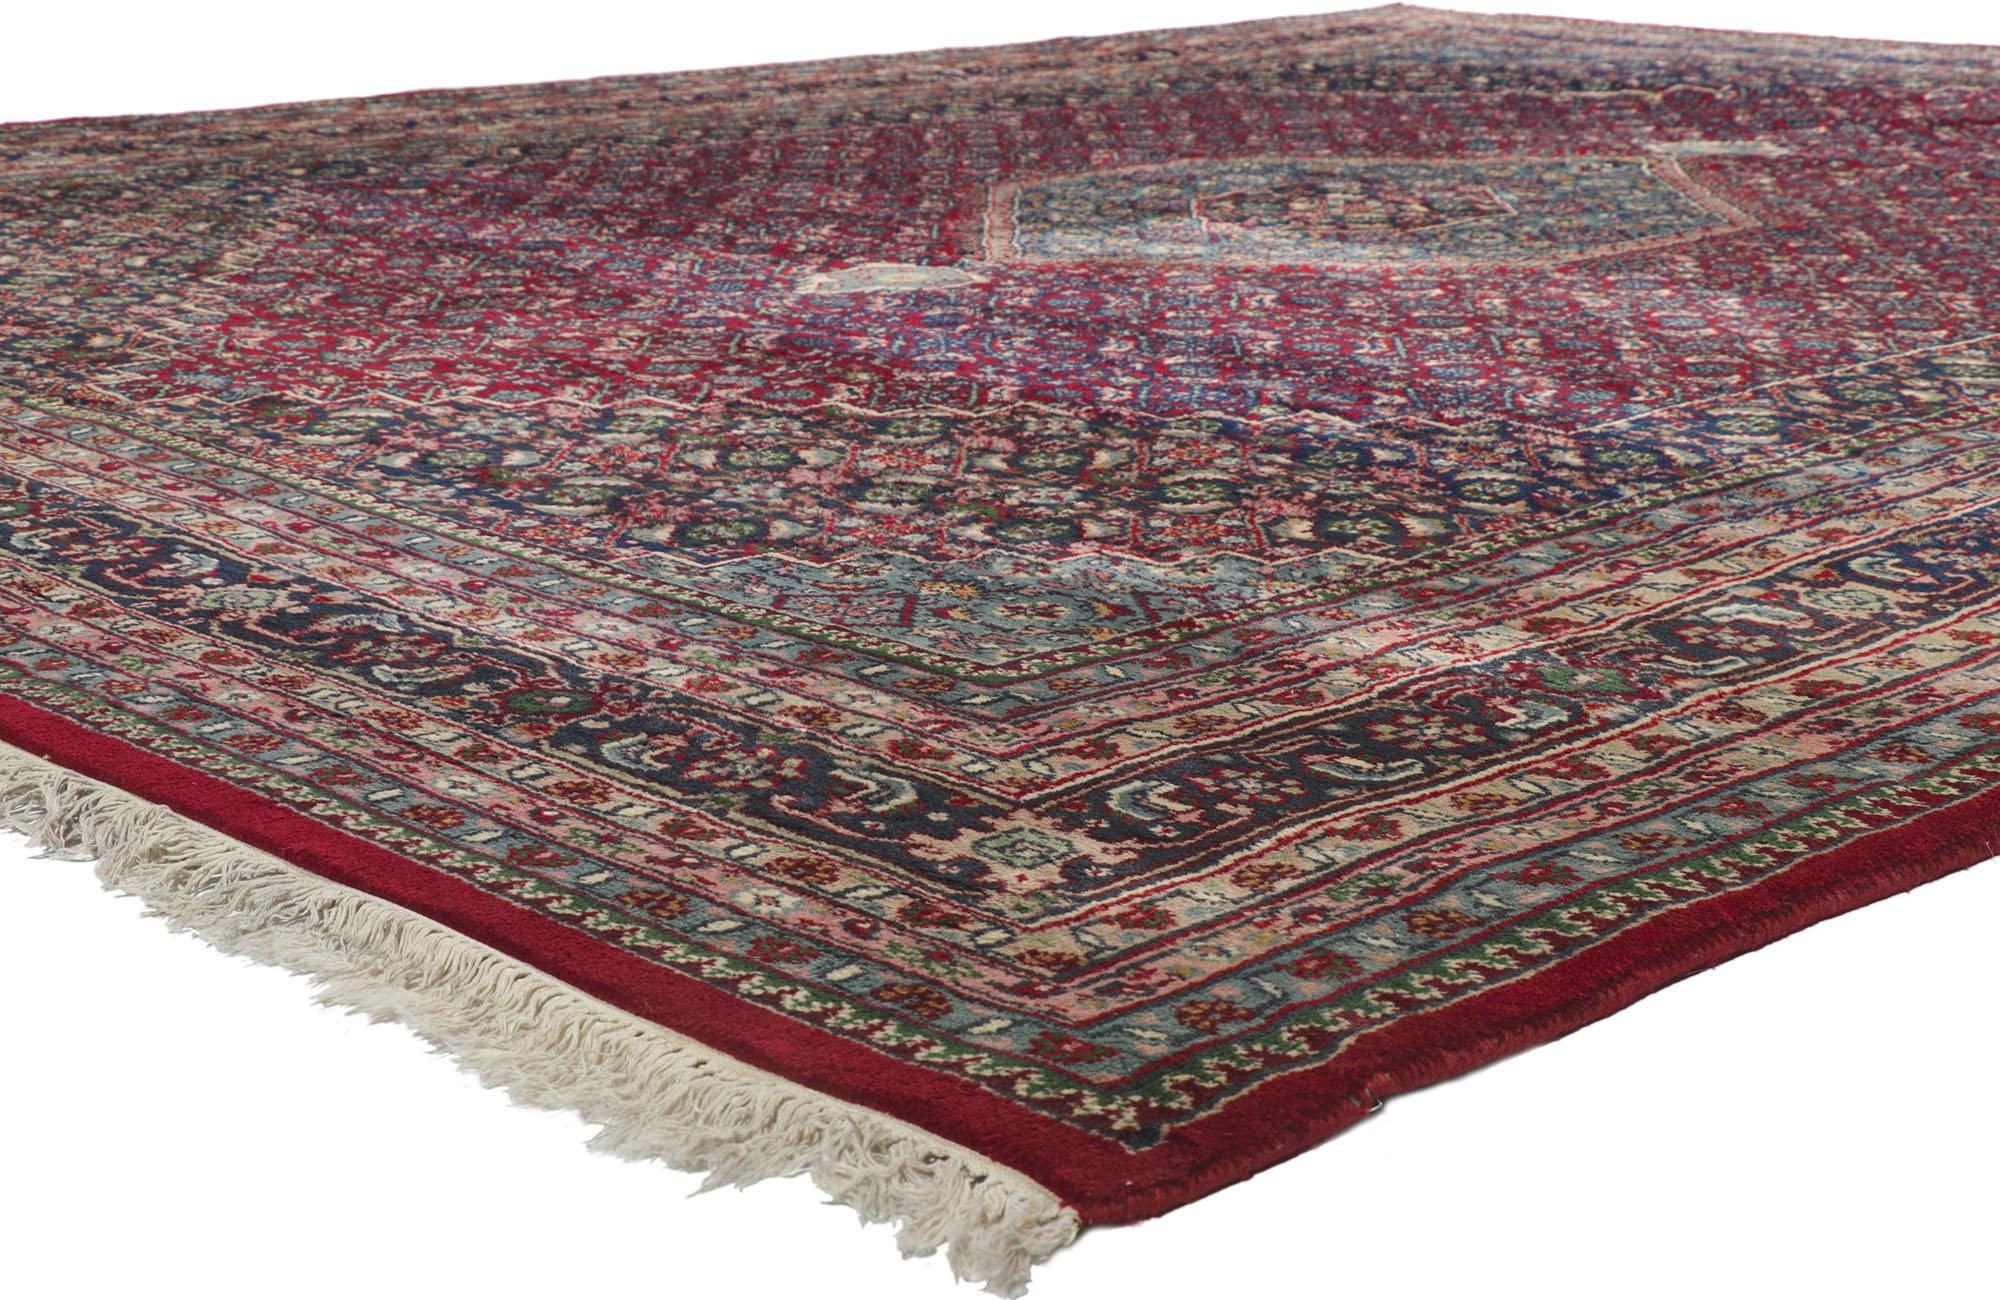 77621 Persischer indischer Teppich im Bijar-Stil, 11'10 x 15'02.